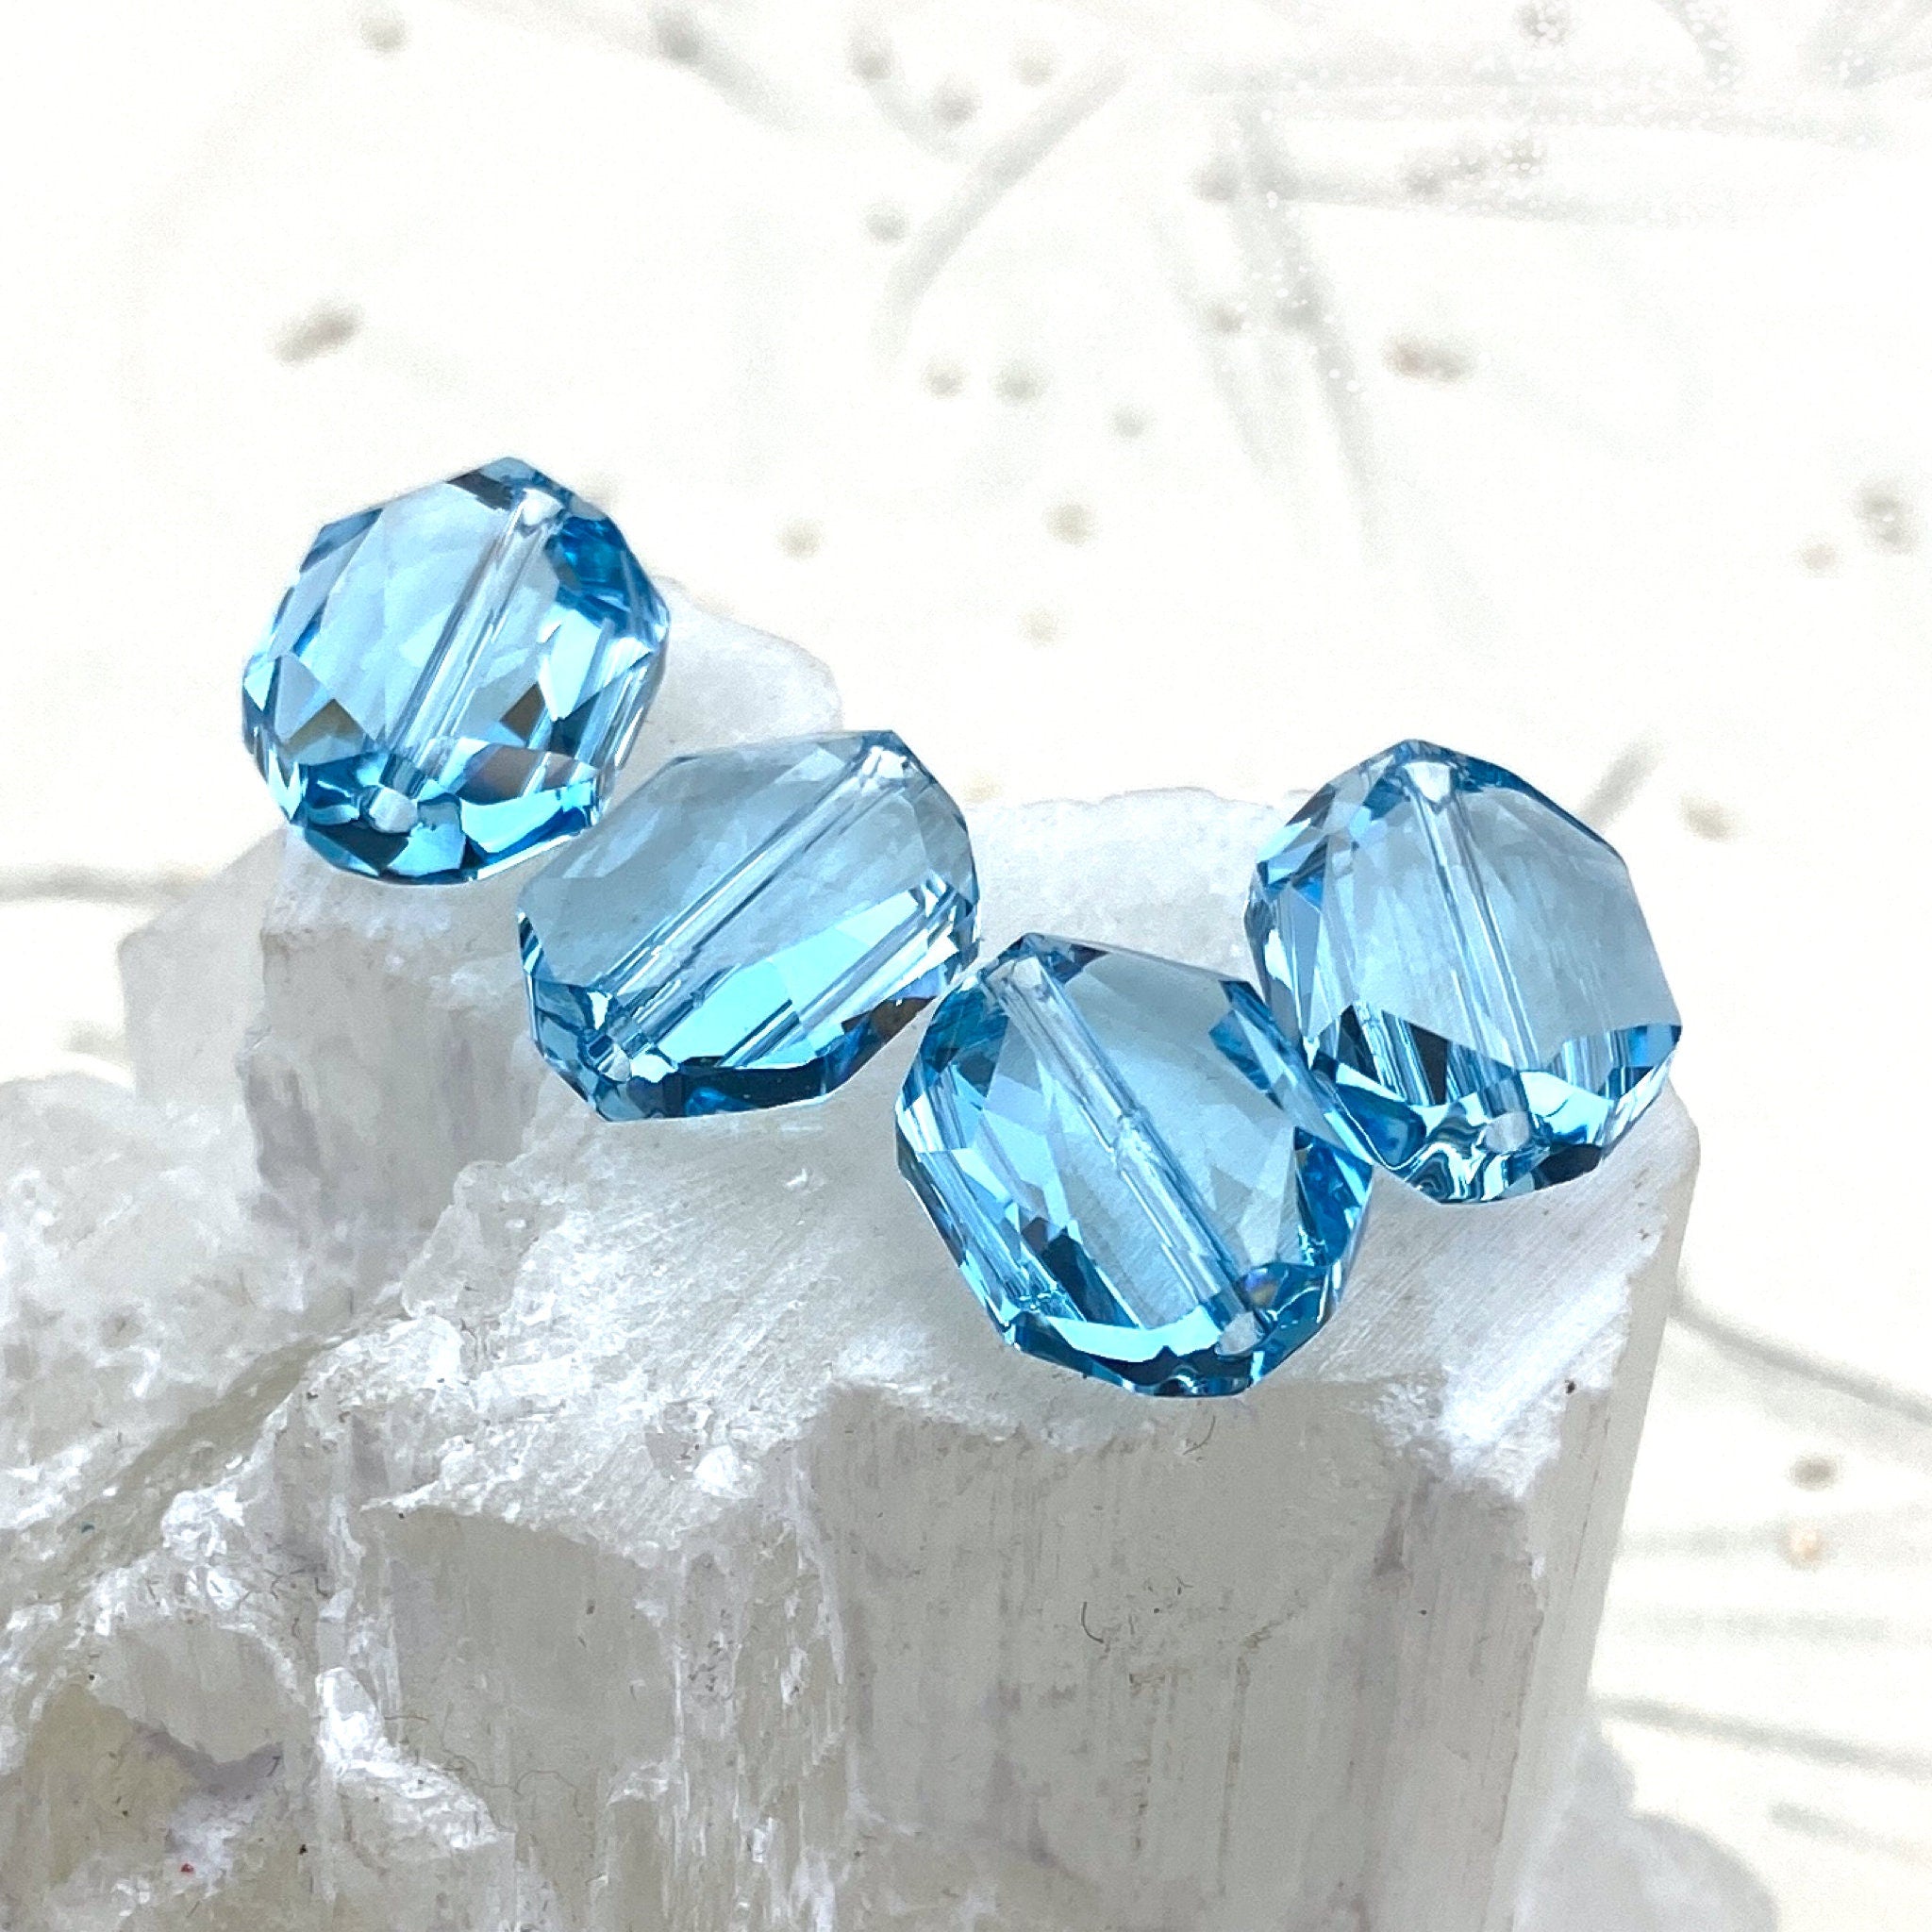 12mm Aquamarine Premium Crystal Graphic Bead Set - 4 Pcs